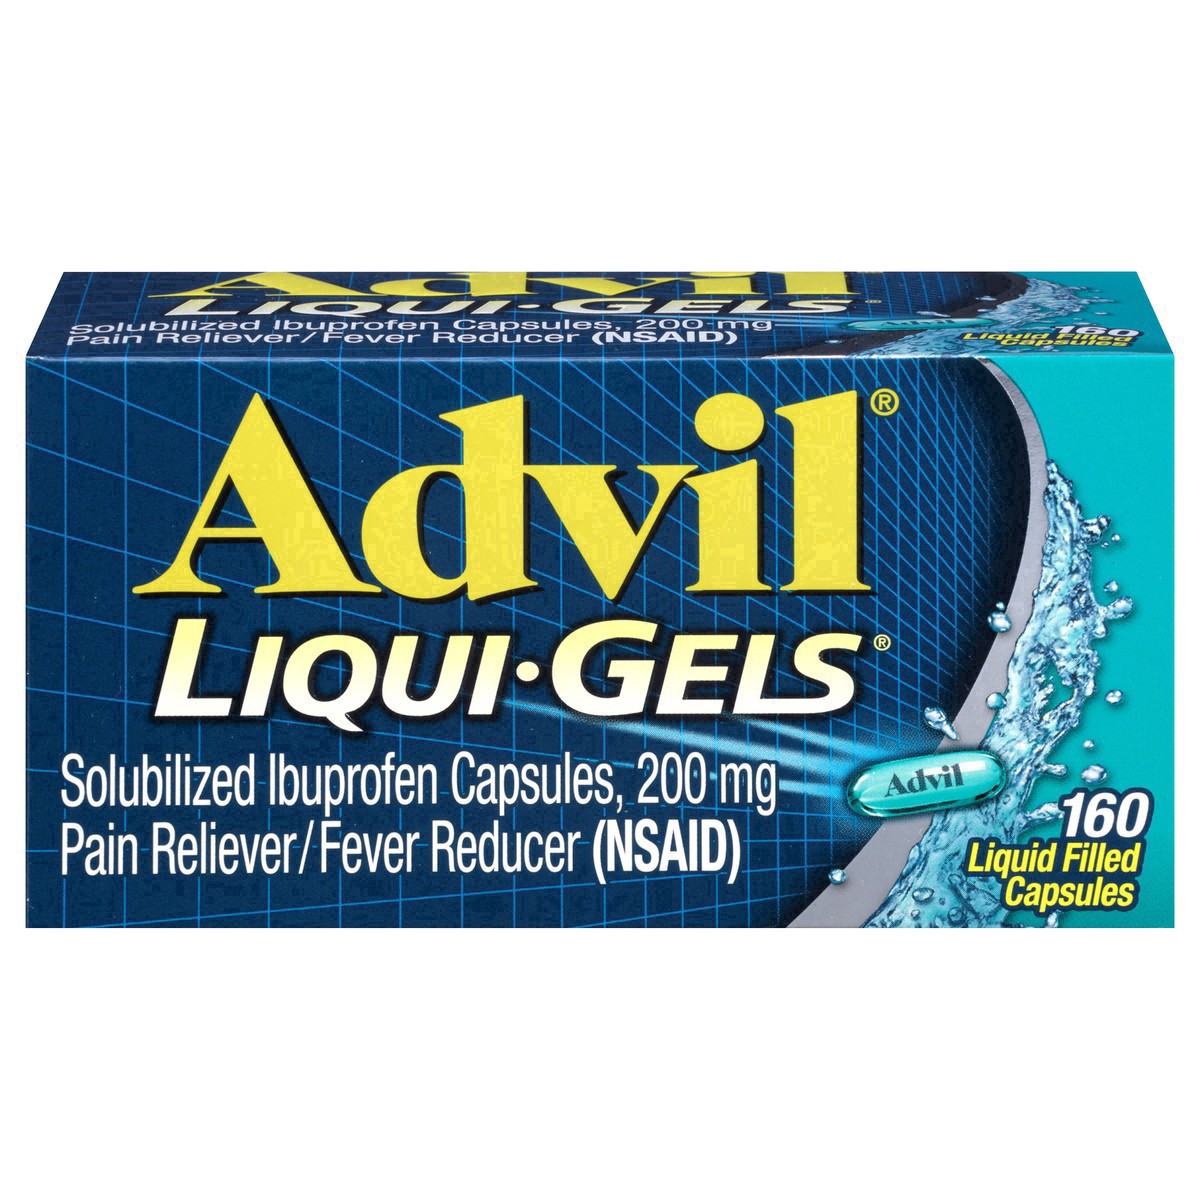 slide 9 of 18, Advil Pain Reliever/Fever Reducer Liqui-Gels Capsules - Ibuprofen (NSAID), 160 ct